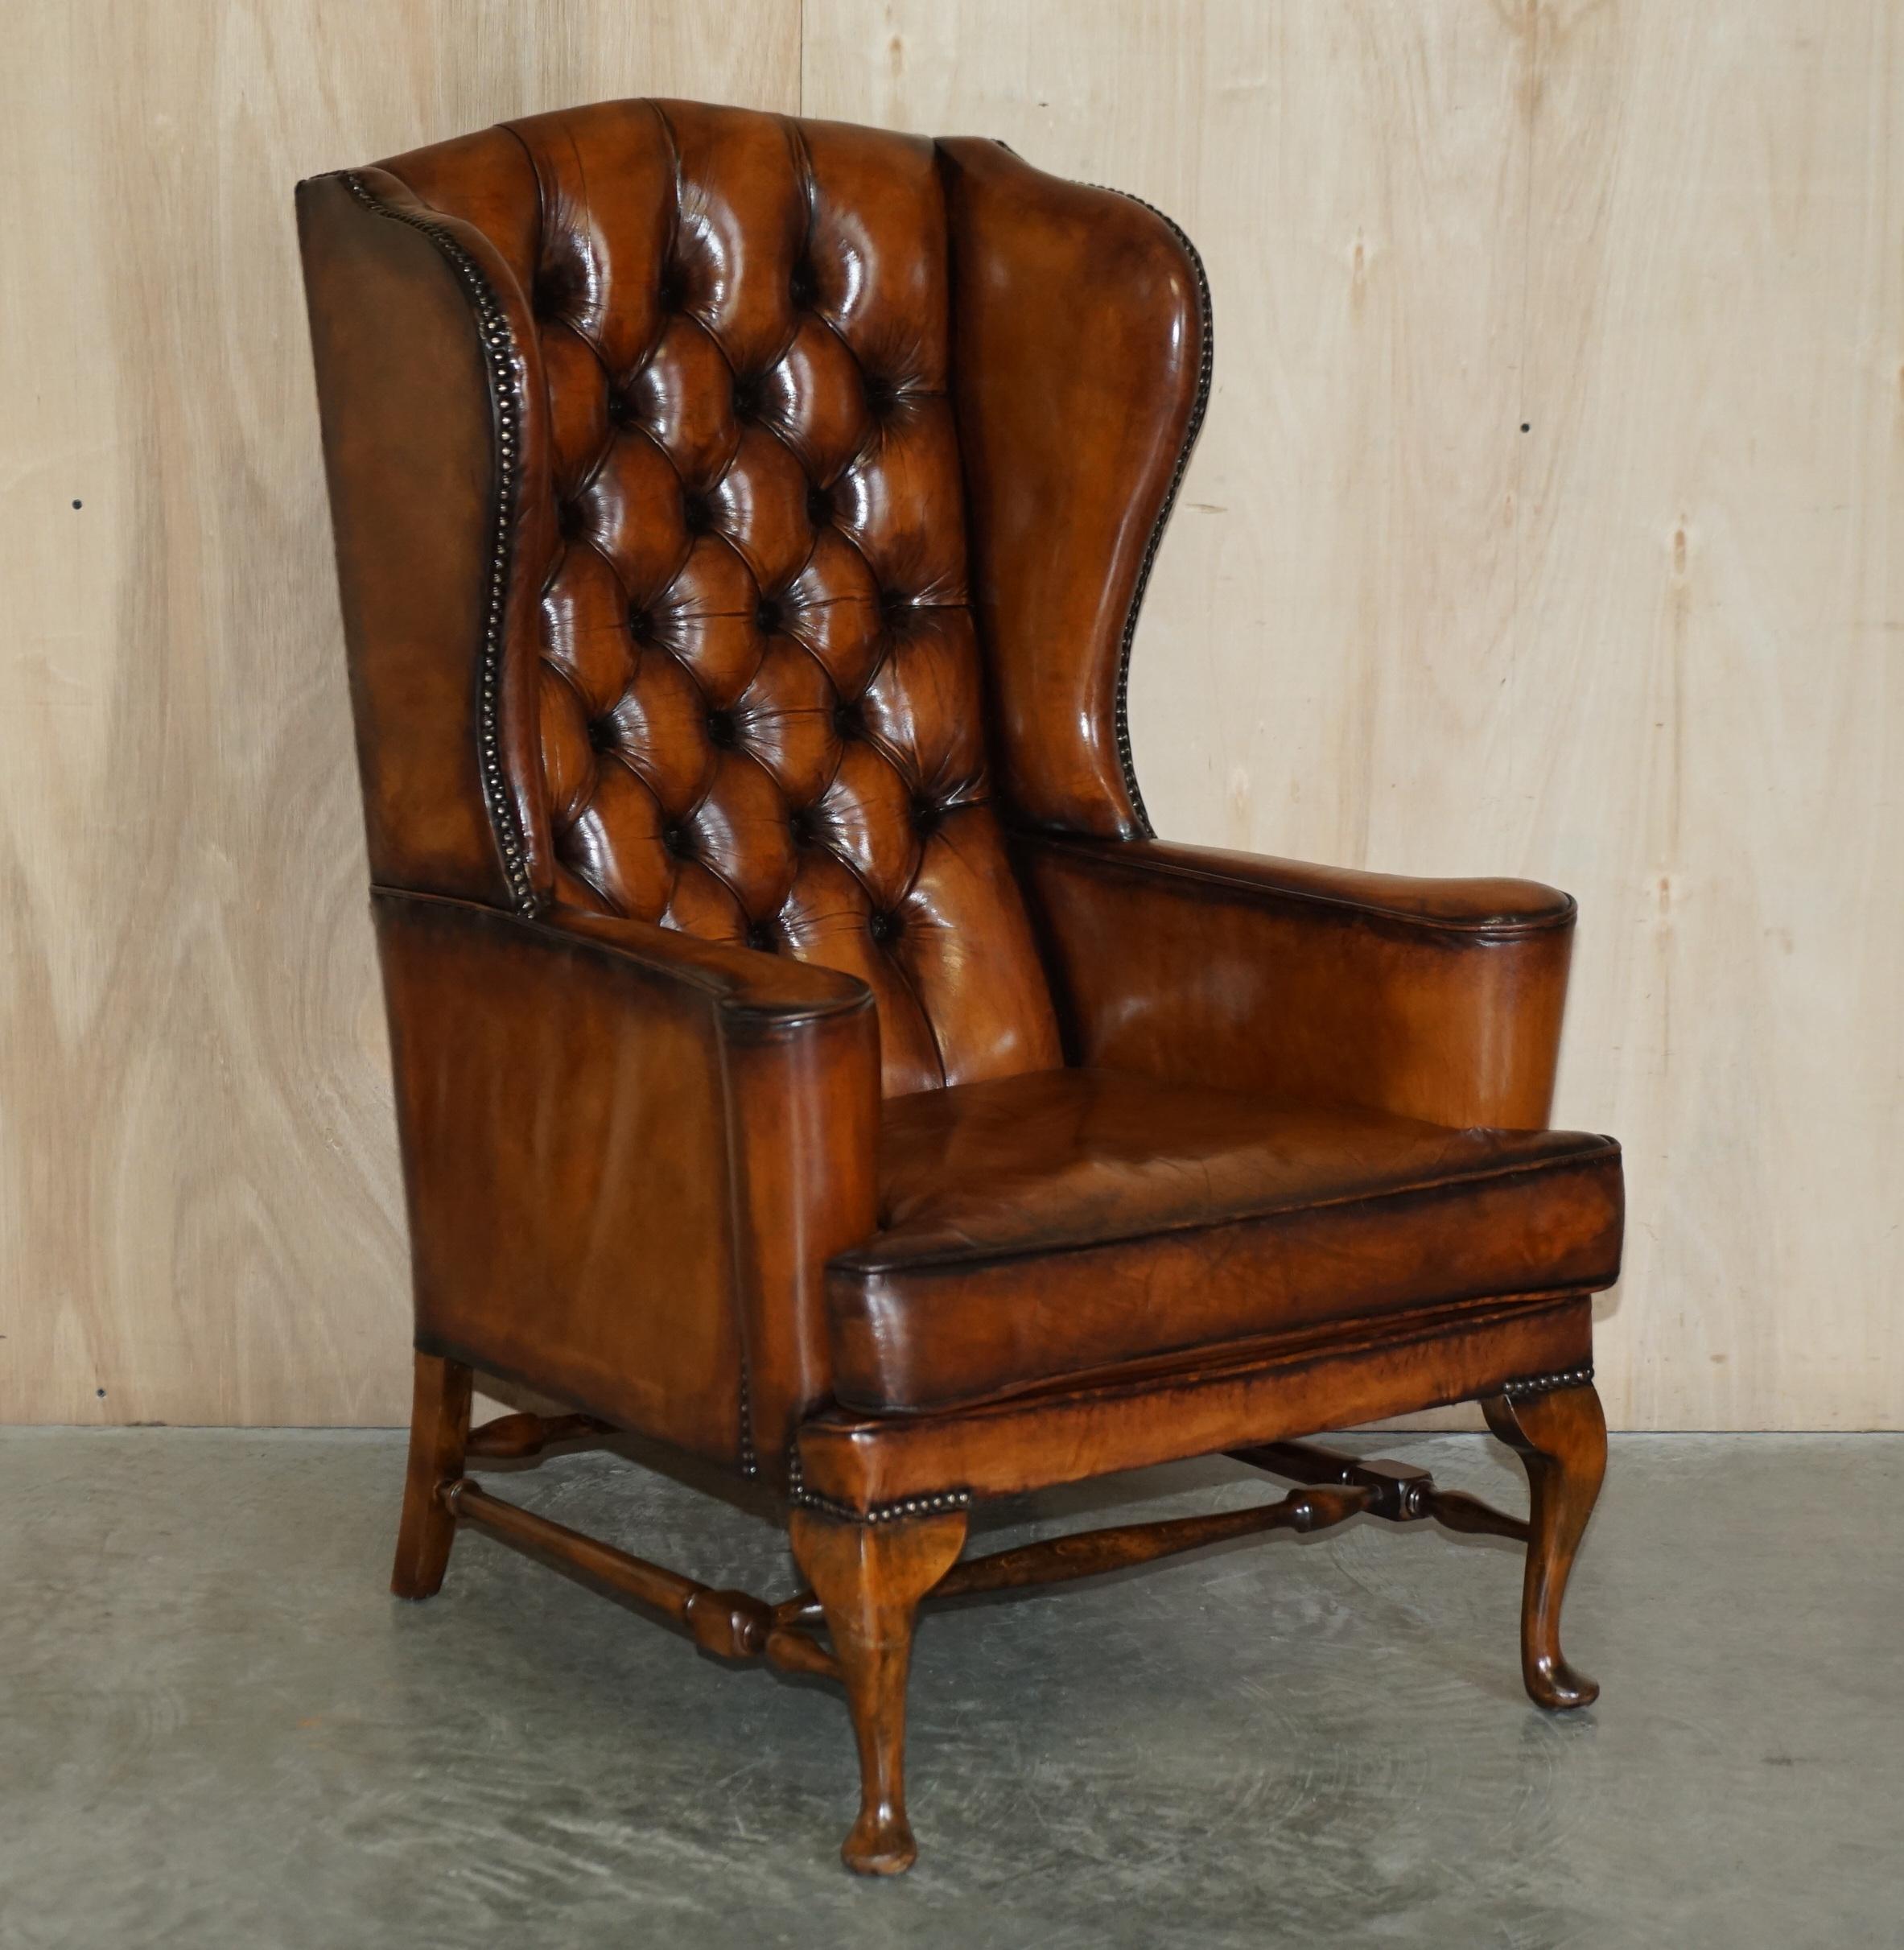 Royal House Antiques

The House Antiques a le plaisir de proposer à la vente cette superbe paire de fauteuils à oreilles de style William Morris, entièrement restaurés, en cuir marron Whisky.

Veuillez noter que les frais de livraison indiqués ne